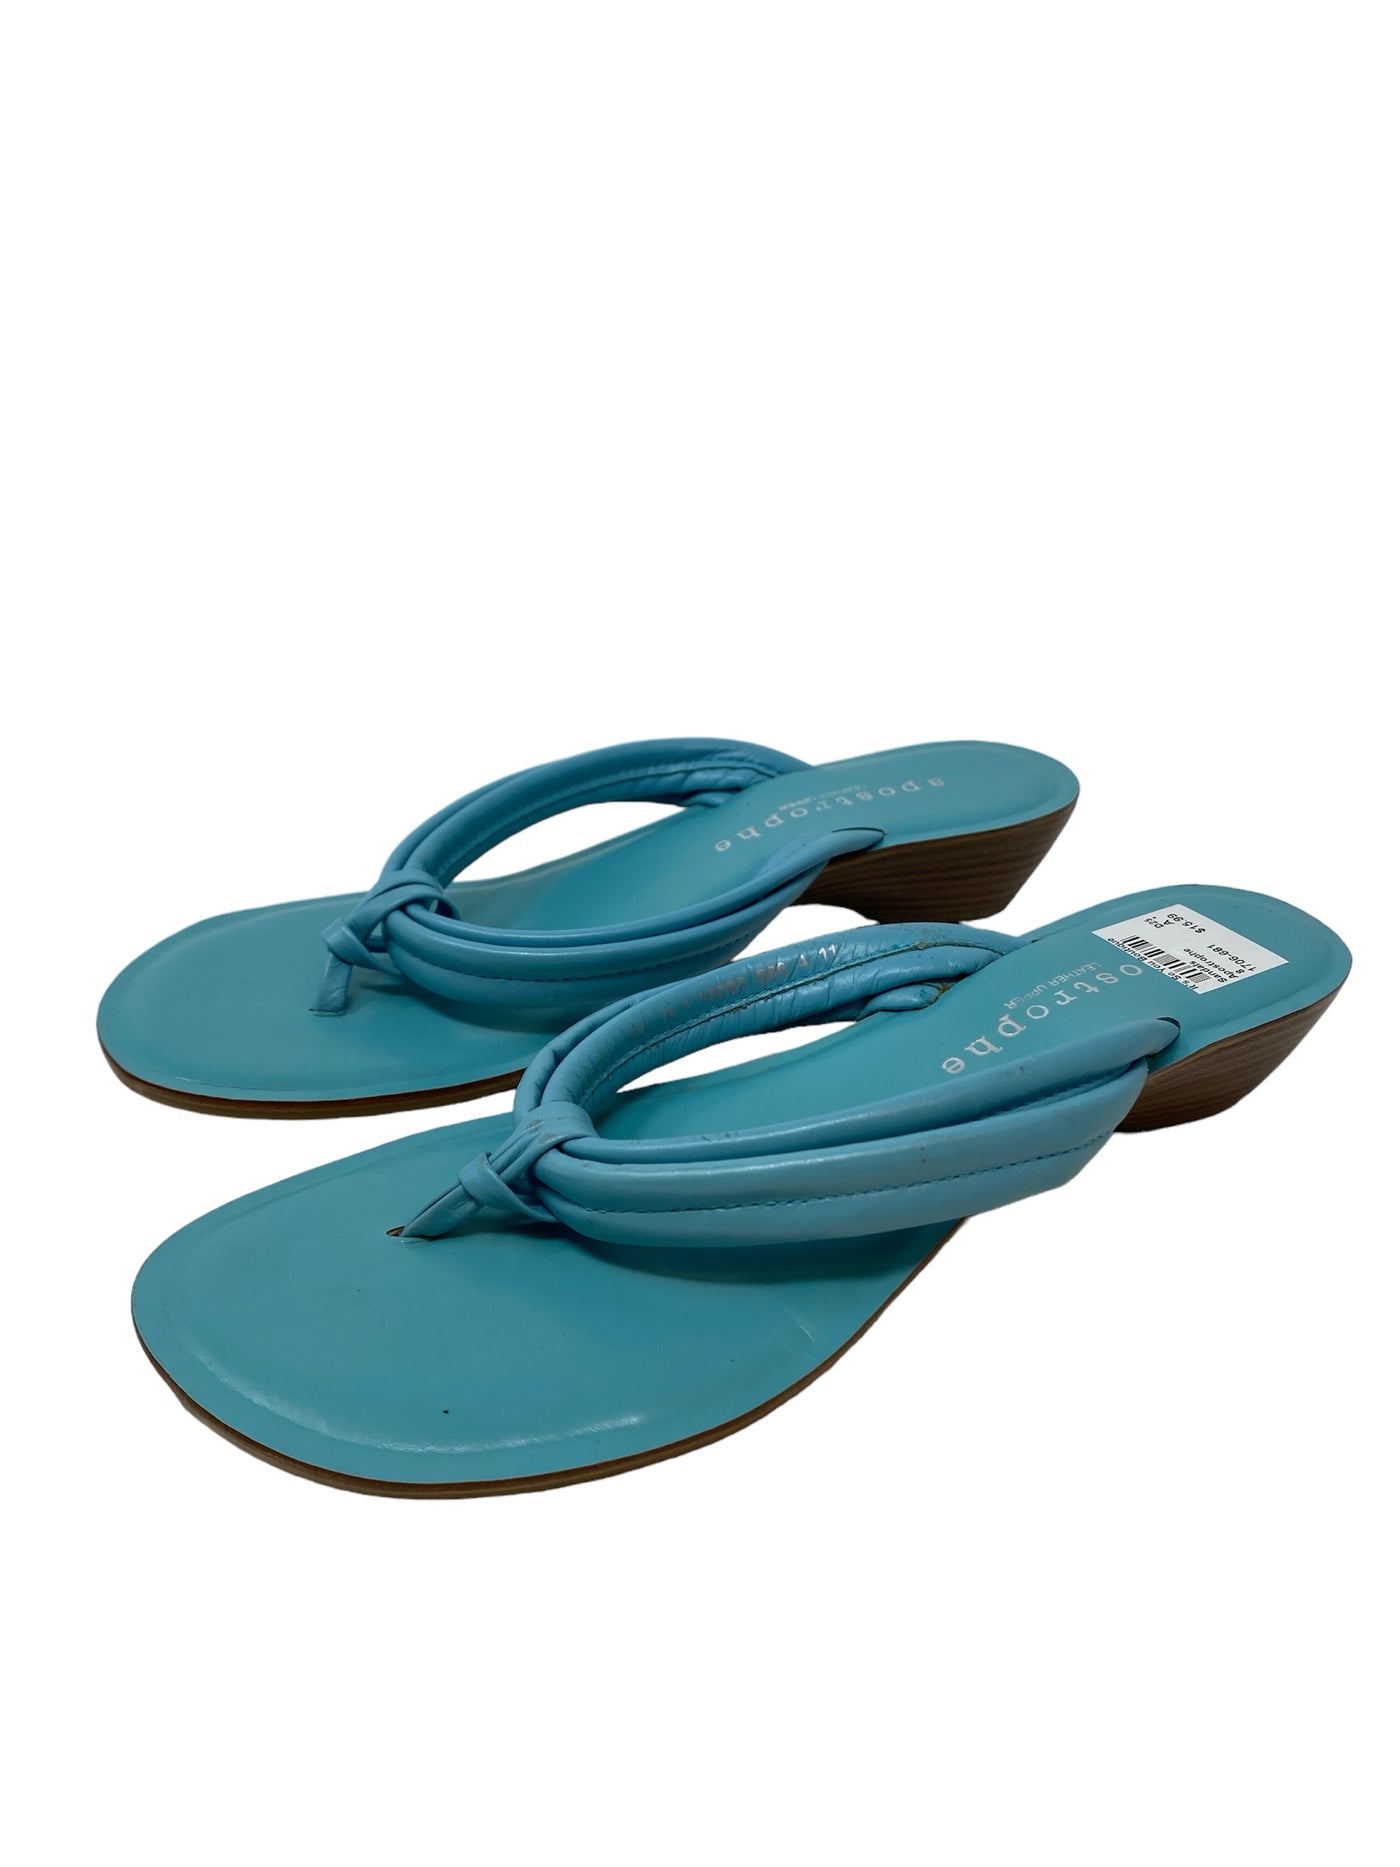 Apostrophe Women Size 8 Blue Sandals